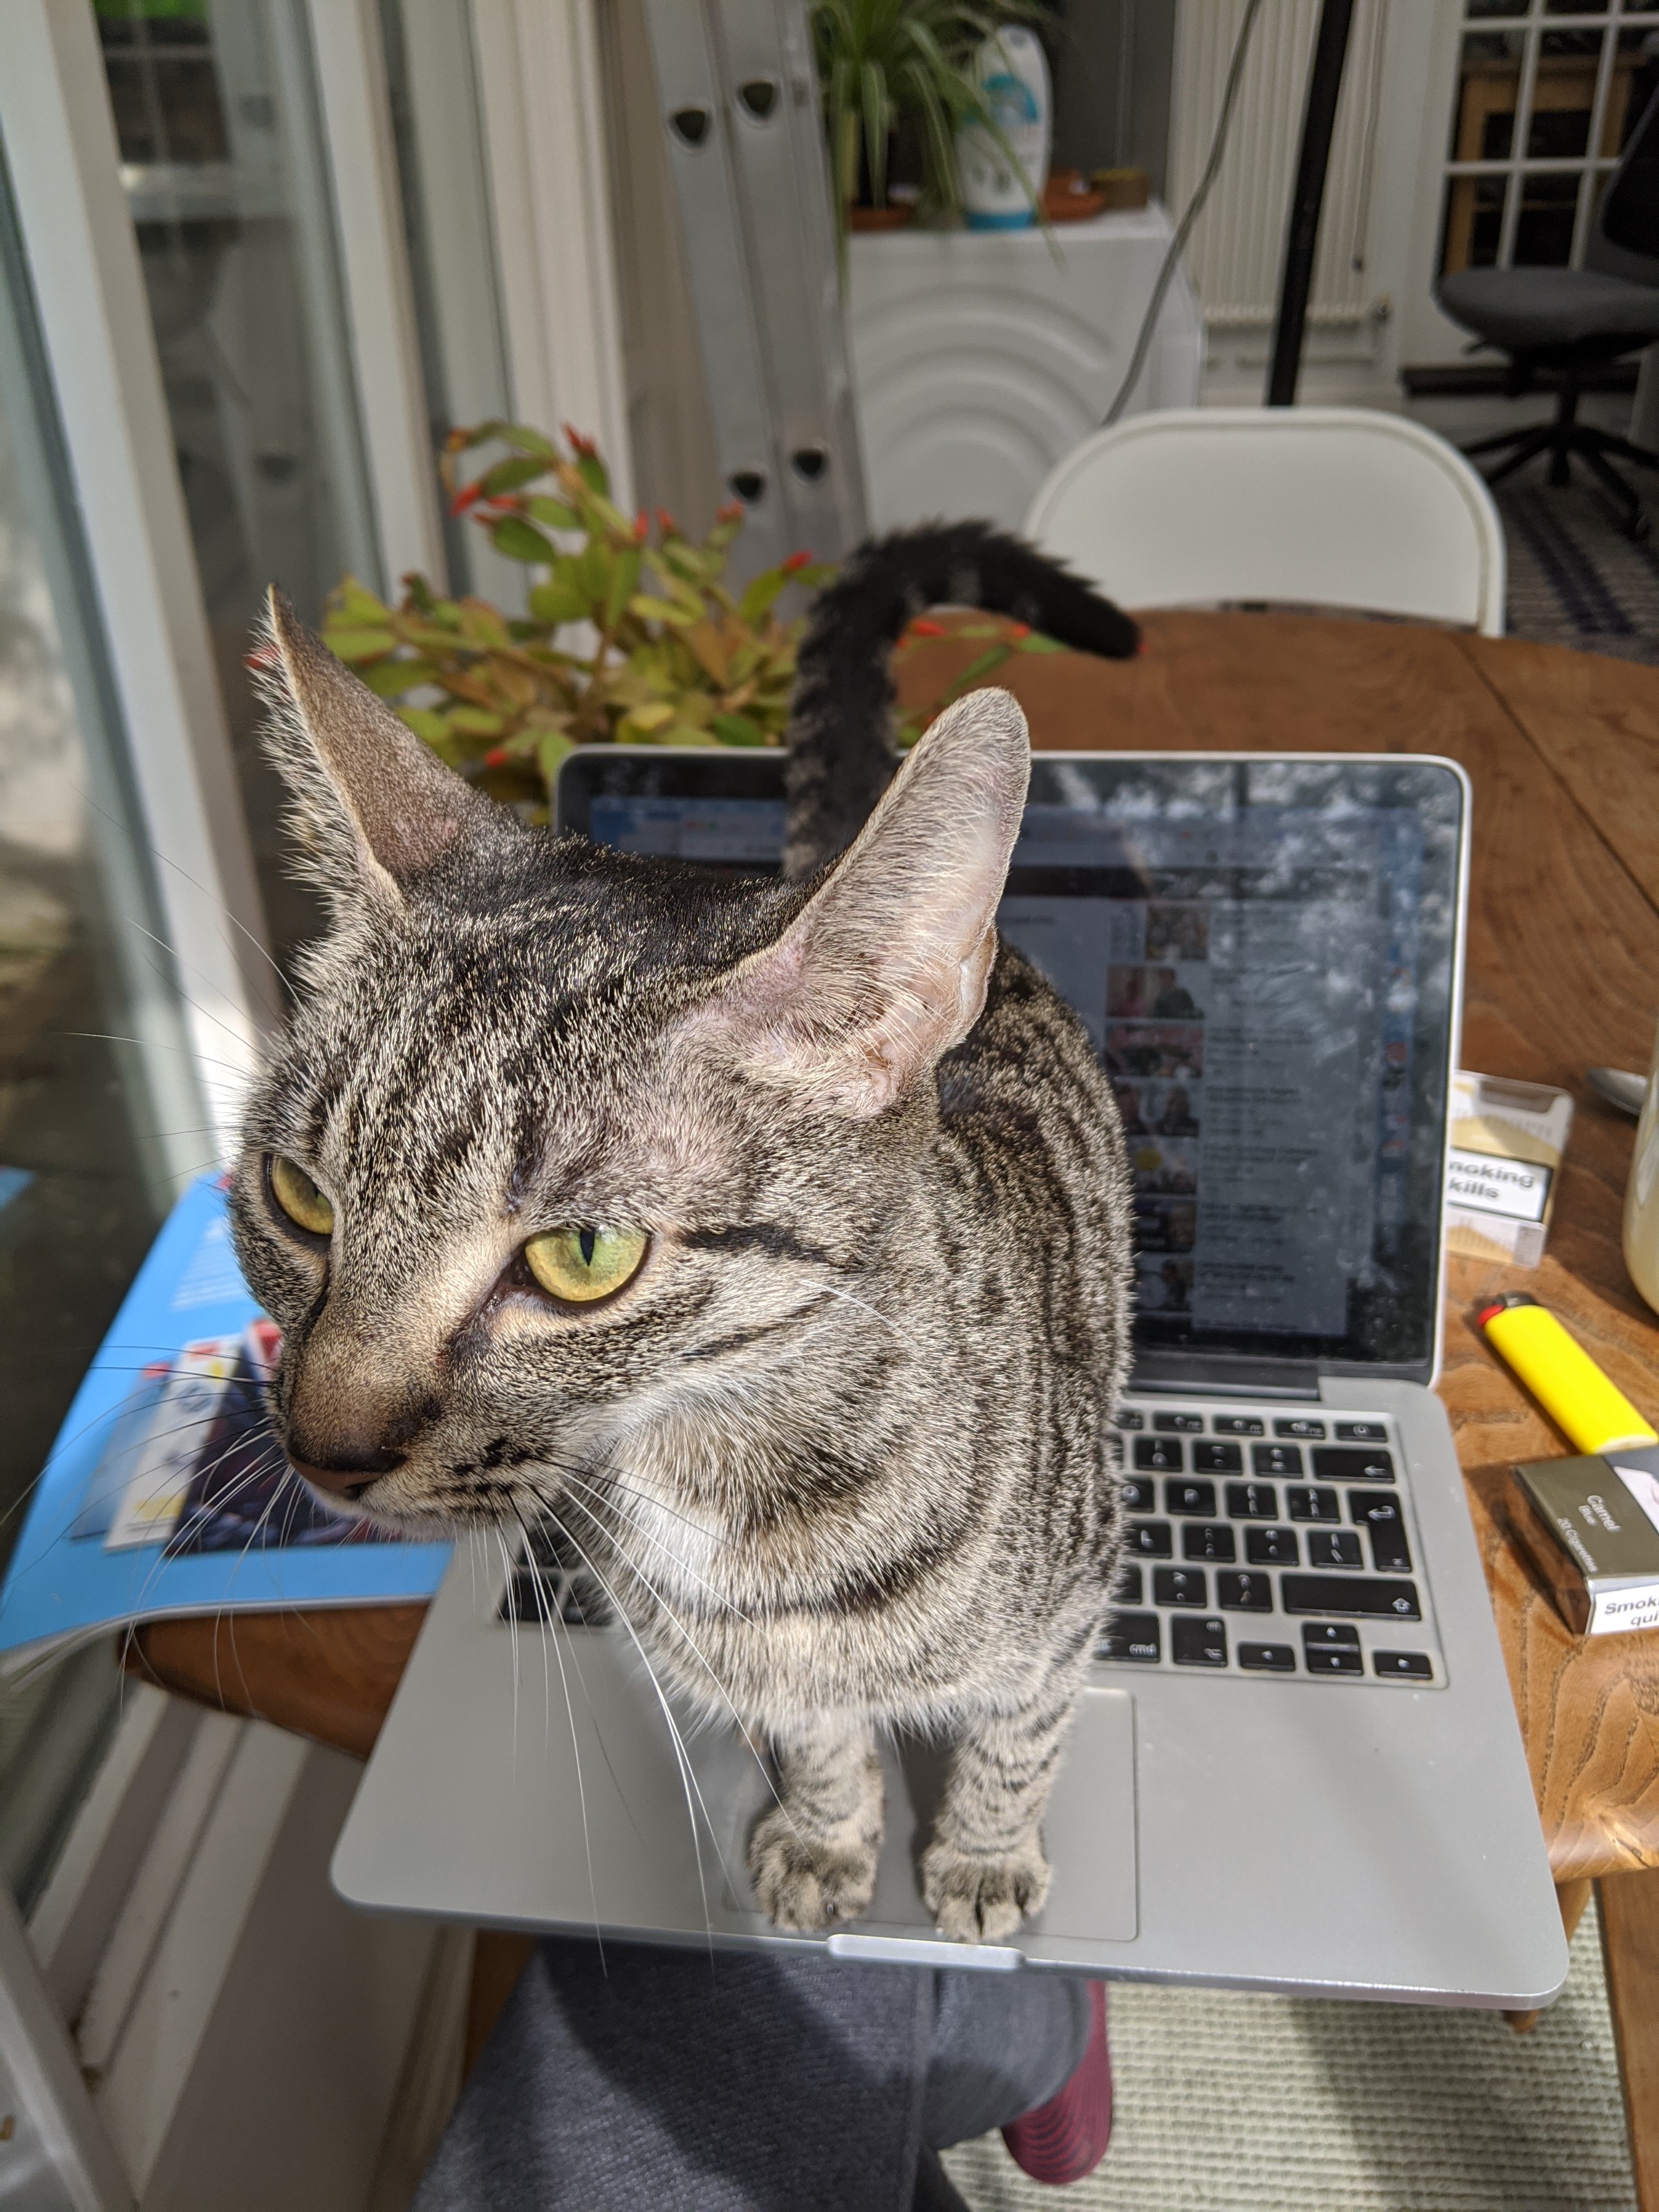 Cat on laptop keyboard